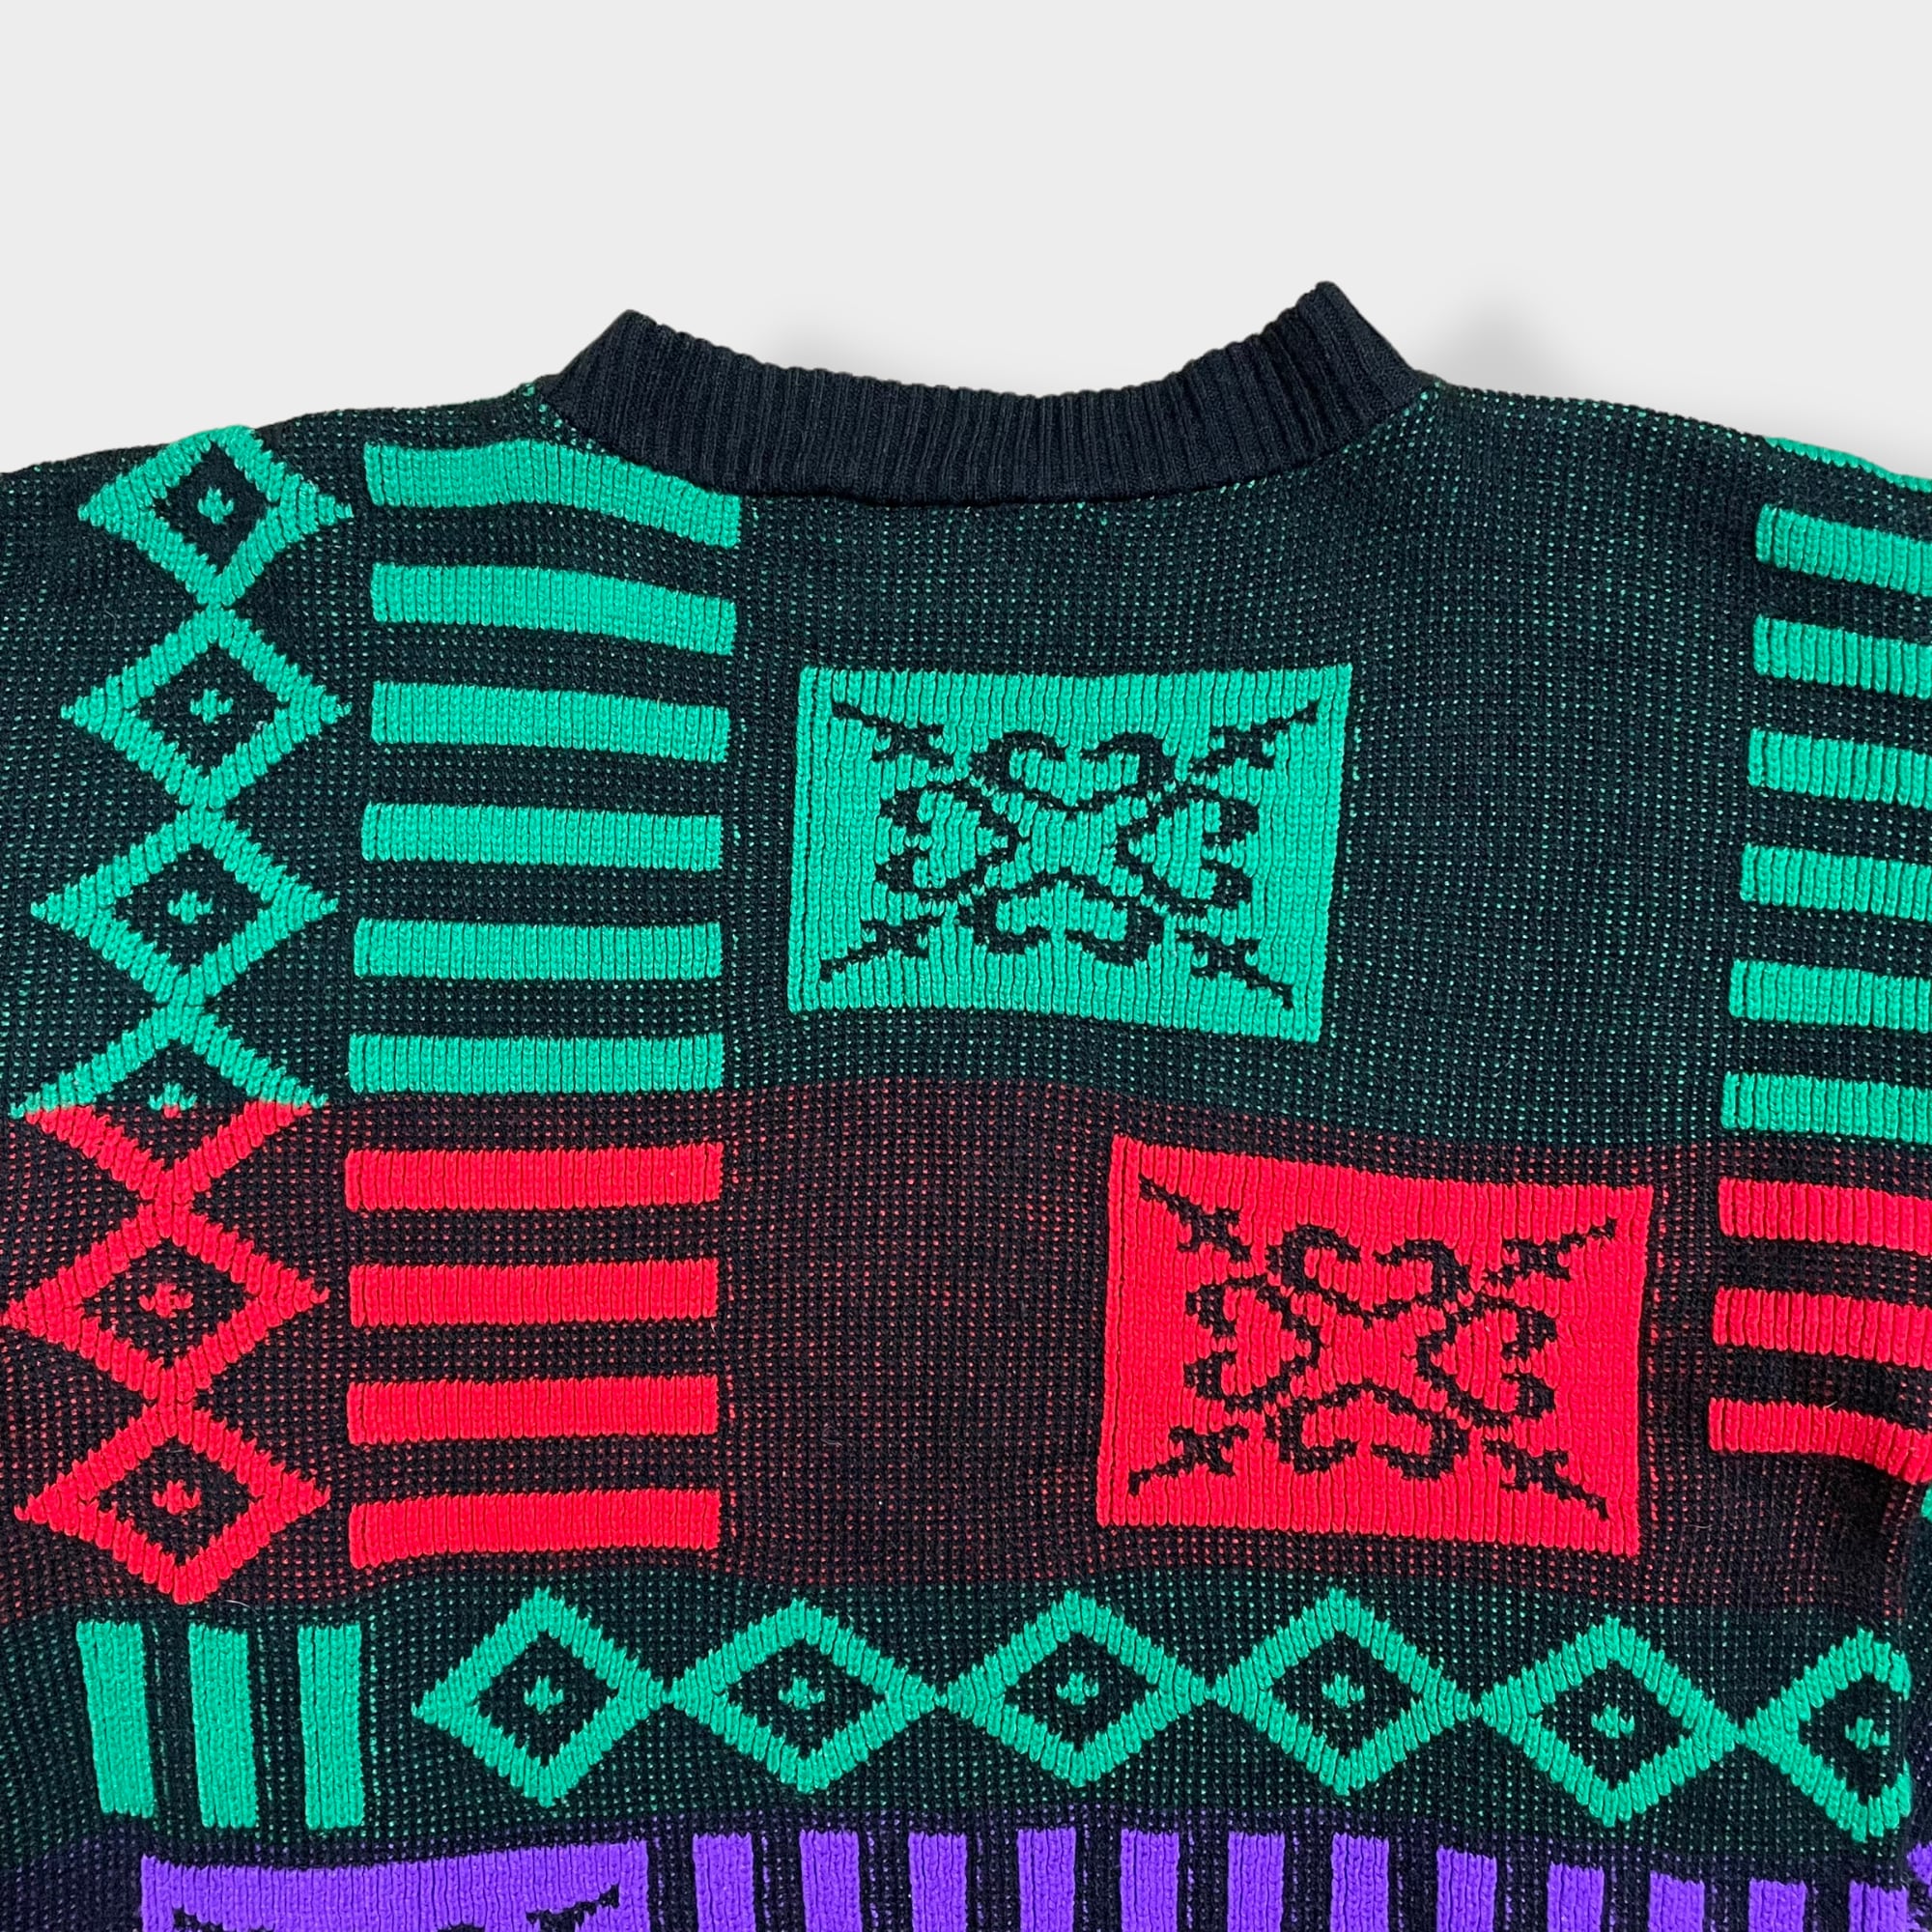 総柄ニット 総柄セーター デザインニット デザインセーター 個性的